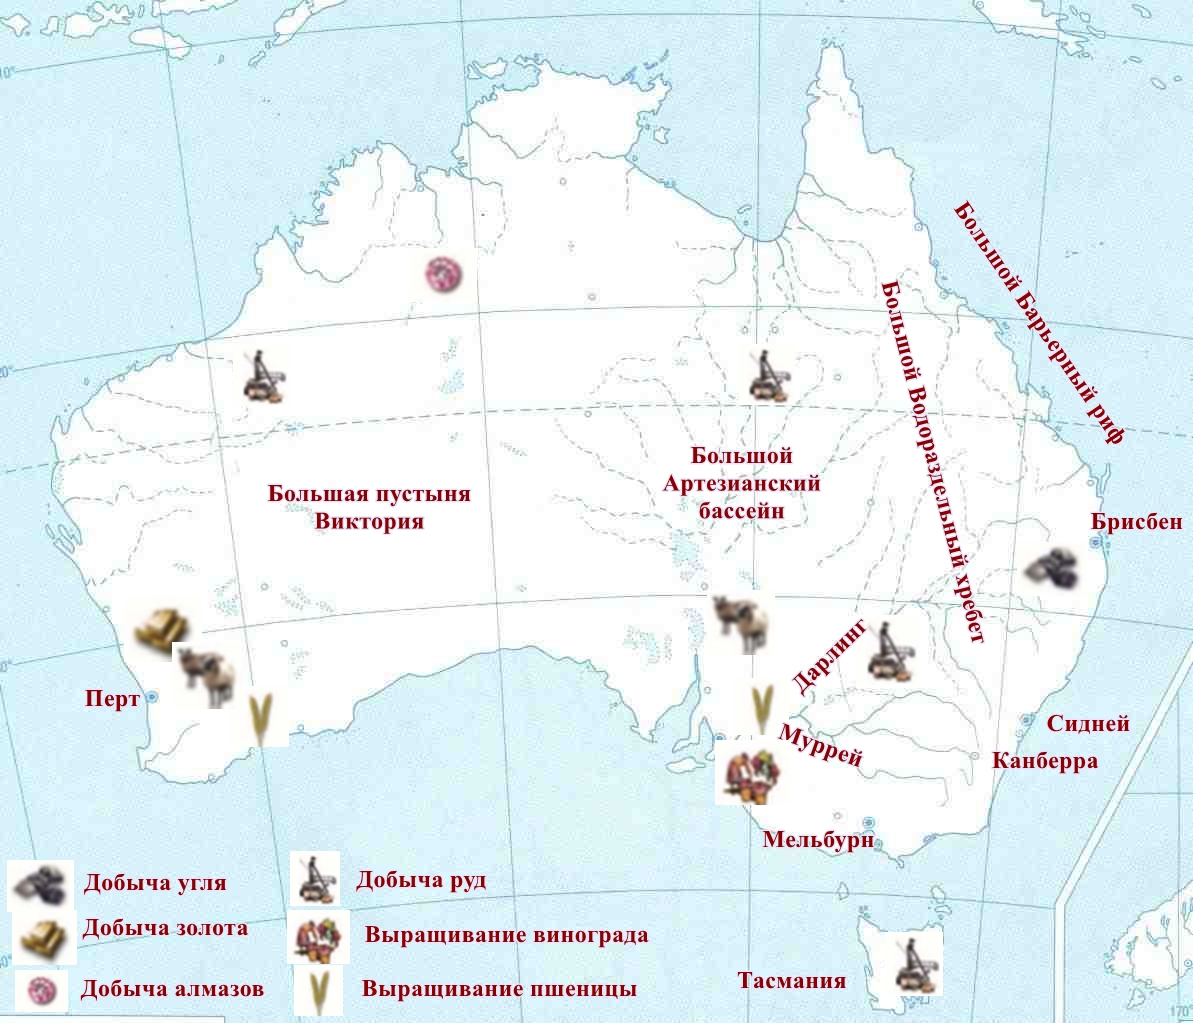 Большой водораздельный хребет на карте полушарий. Большой артезианский бассейн на карте Австралии. Большой Водораздельный хребет в Австралии на карте. Крупные объекты Австралии. Большой артезианский бассейн в Австралии на контурной карте.